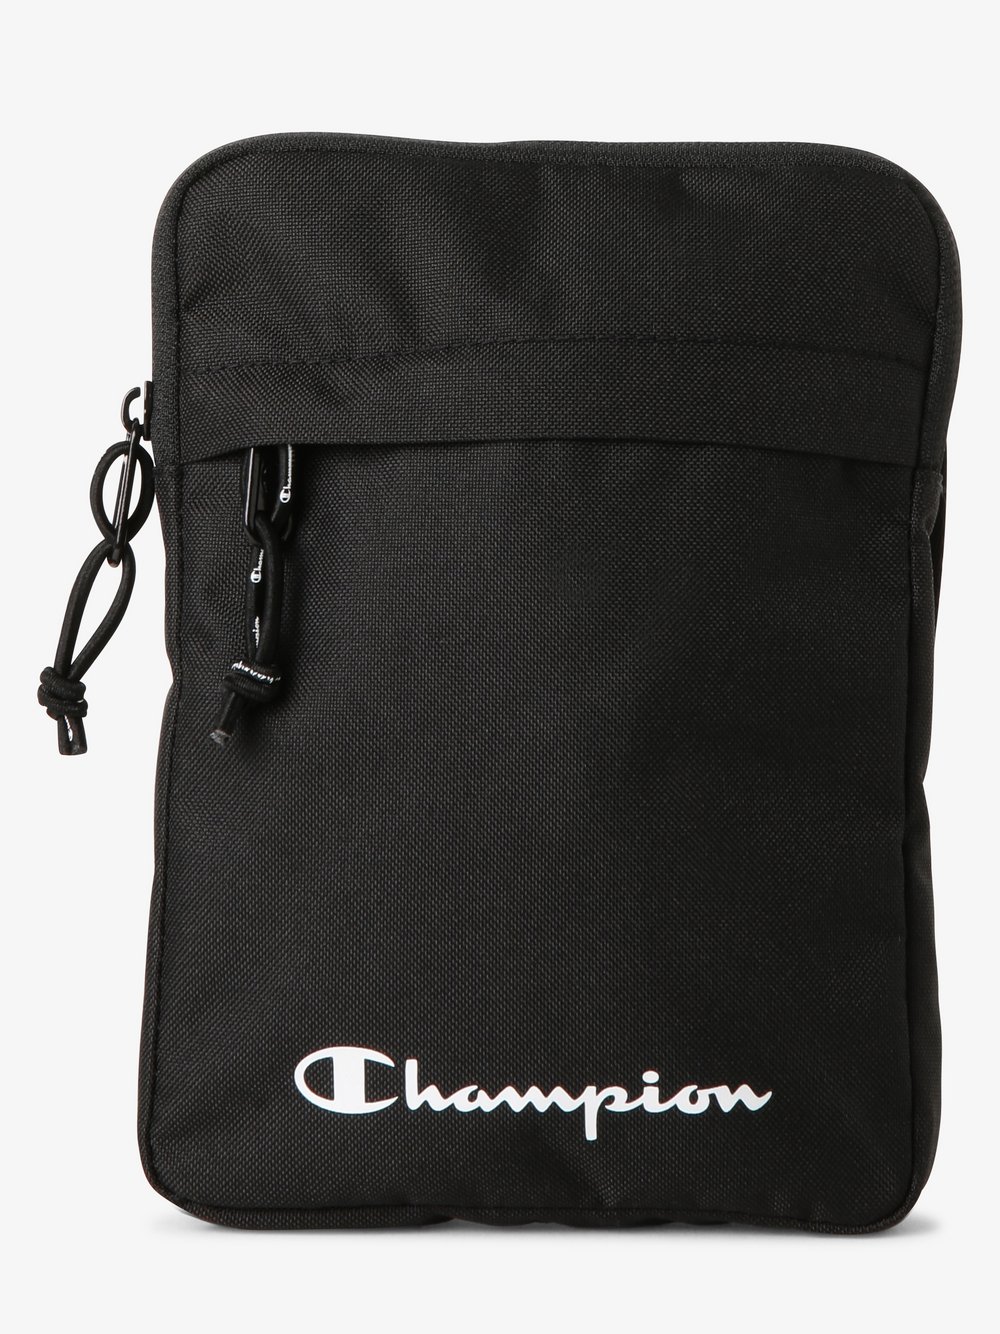 Champion - Męska torebka na ramię, czarny